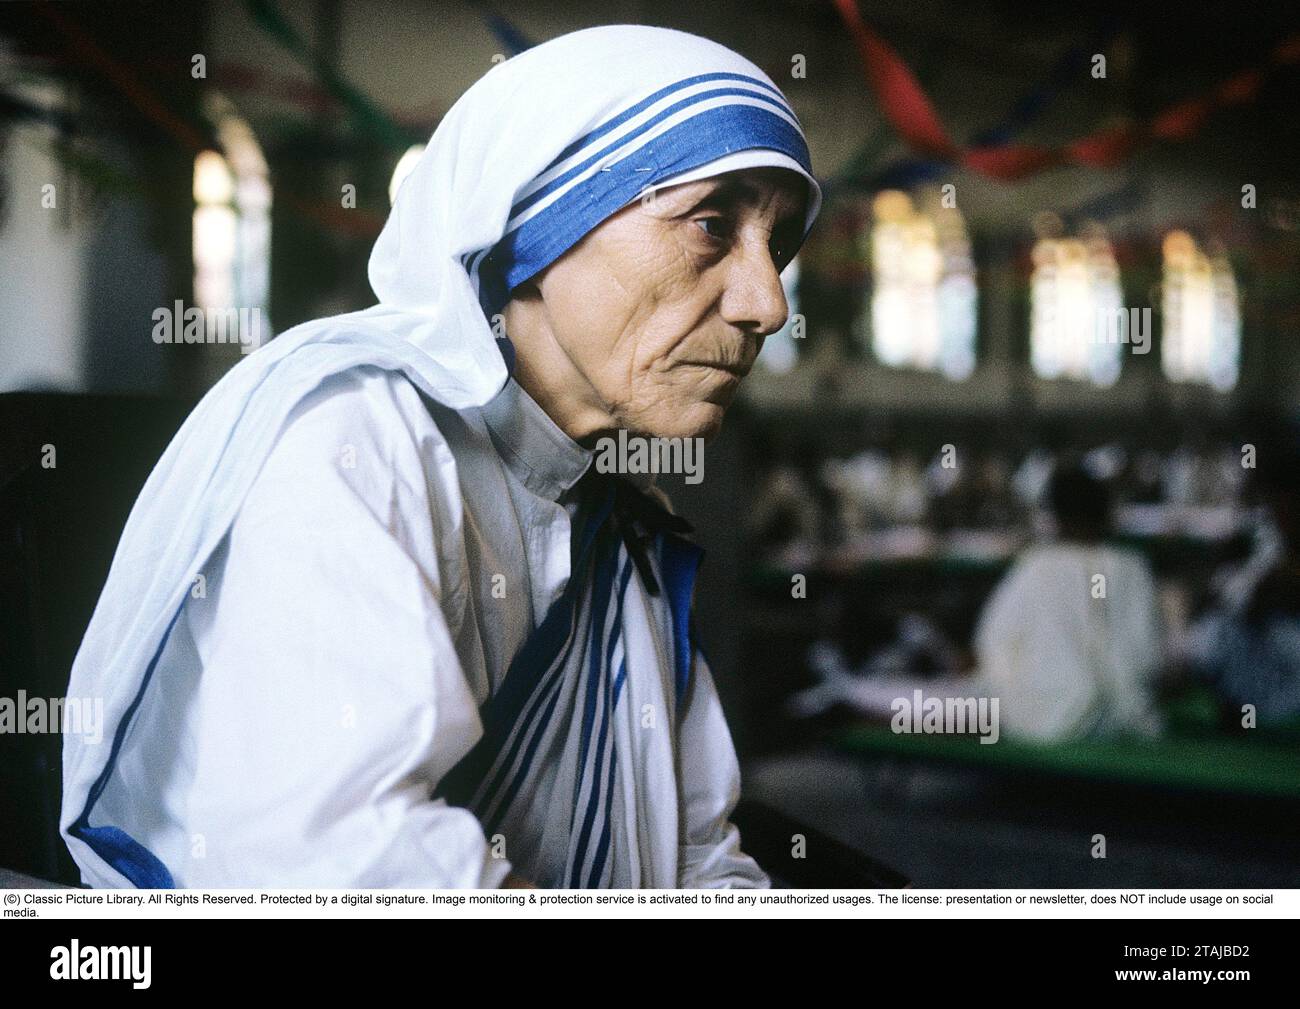 Mary Teresa Bojaxhiu (26. August 1910 – 5. September 1997), besser bekannt als Mutter Teresa, war eine albanisch-indische katholische Nonne und Gründerin der Missionare der Charity. Geboren in Skopje, damals Teil des Osmanischen Reiches, zog sie im Alter von 18 Jahren nach Irland und später nach Indien, wo sie den größten Teil ihres Lebens lebte. Am 4. September 2016 wurde sie von der katholischen Kirche als Heilige Teresa von Kalkutta heiliggesprochen.1963. Roland Palm Ref. 8-5-3 Stockfoto